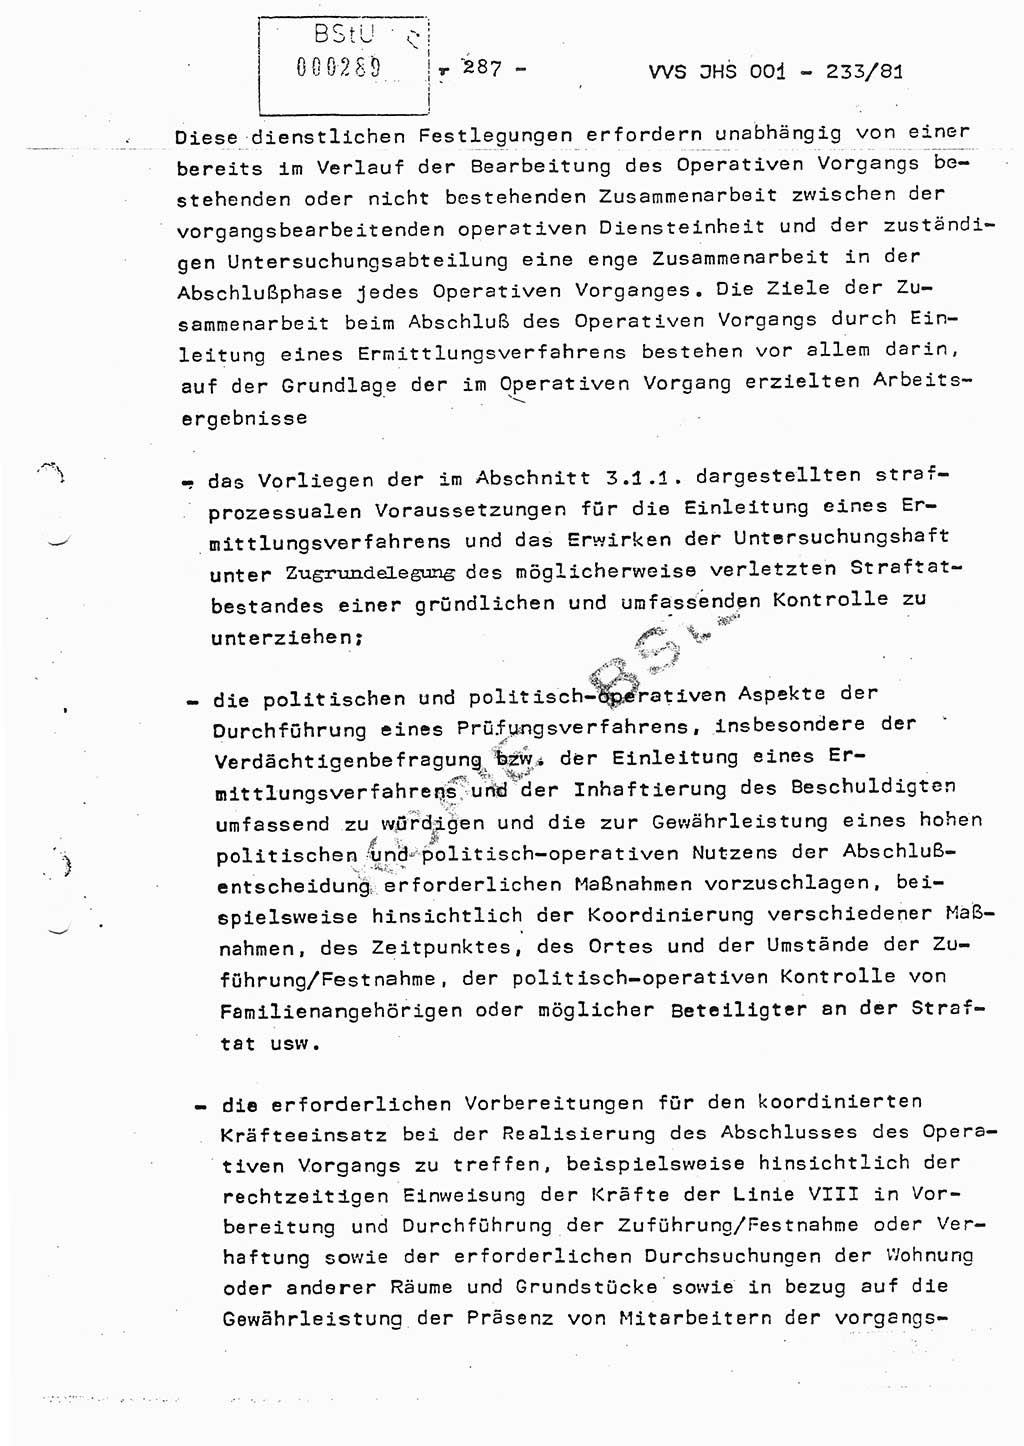 Dissertation Oberstleutnant Horst Zank (JHS), Oberstleutnant Dr. Karl-Heinz Knoblauch (JHS), Oberstleutnant Gustav-Adolf Kowalewski (HA Ⅸ), Oberstleutnant Wolfgang Plötner (HA Ⅸ), Ministerium für Staatssicherheit (MfS) [Deutsche Demokratische Republik (DDR)], Juristische Hochschule (JHS), Vertrauliche Verschlußsache (VVS) o001-233/81, Potsdam 1981, Blatt 287 (Diss. MfS DDR JHS VVS o001-233/81 1981, Bl. 287)